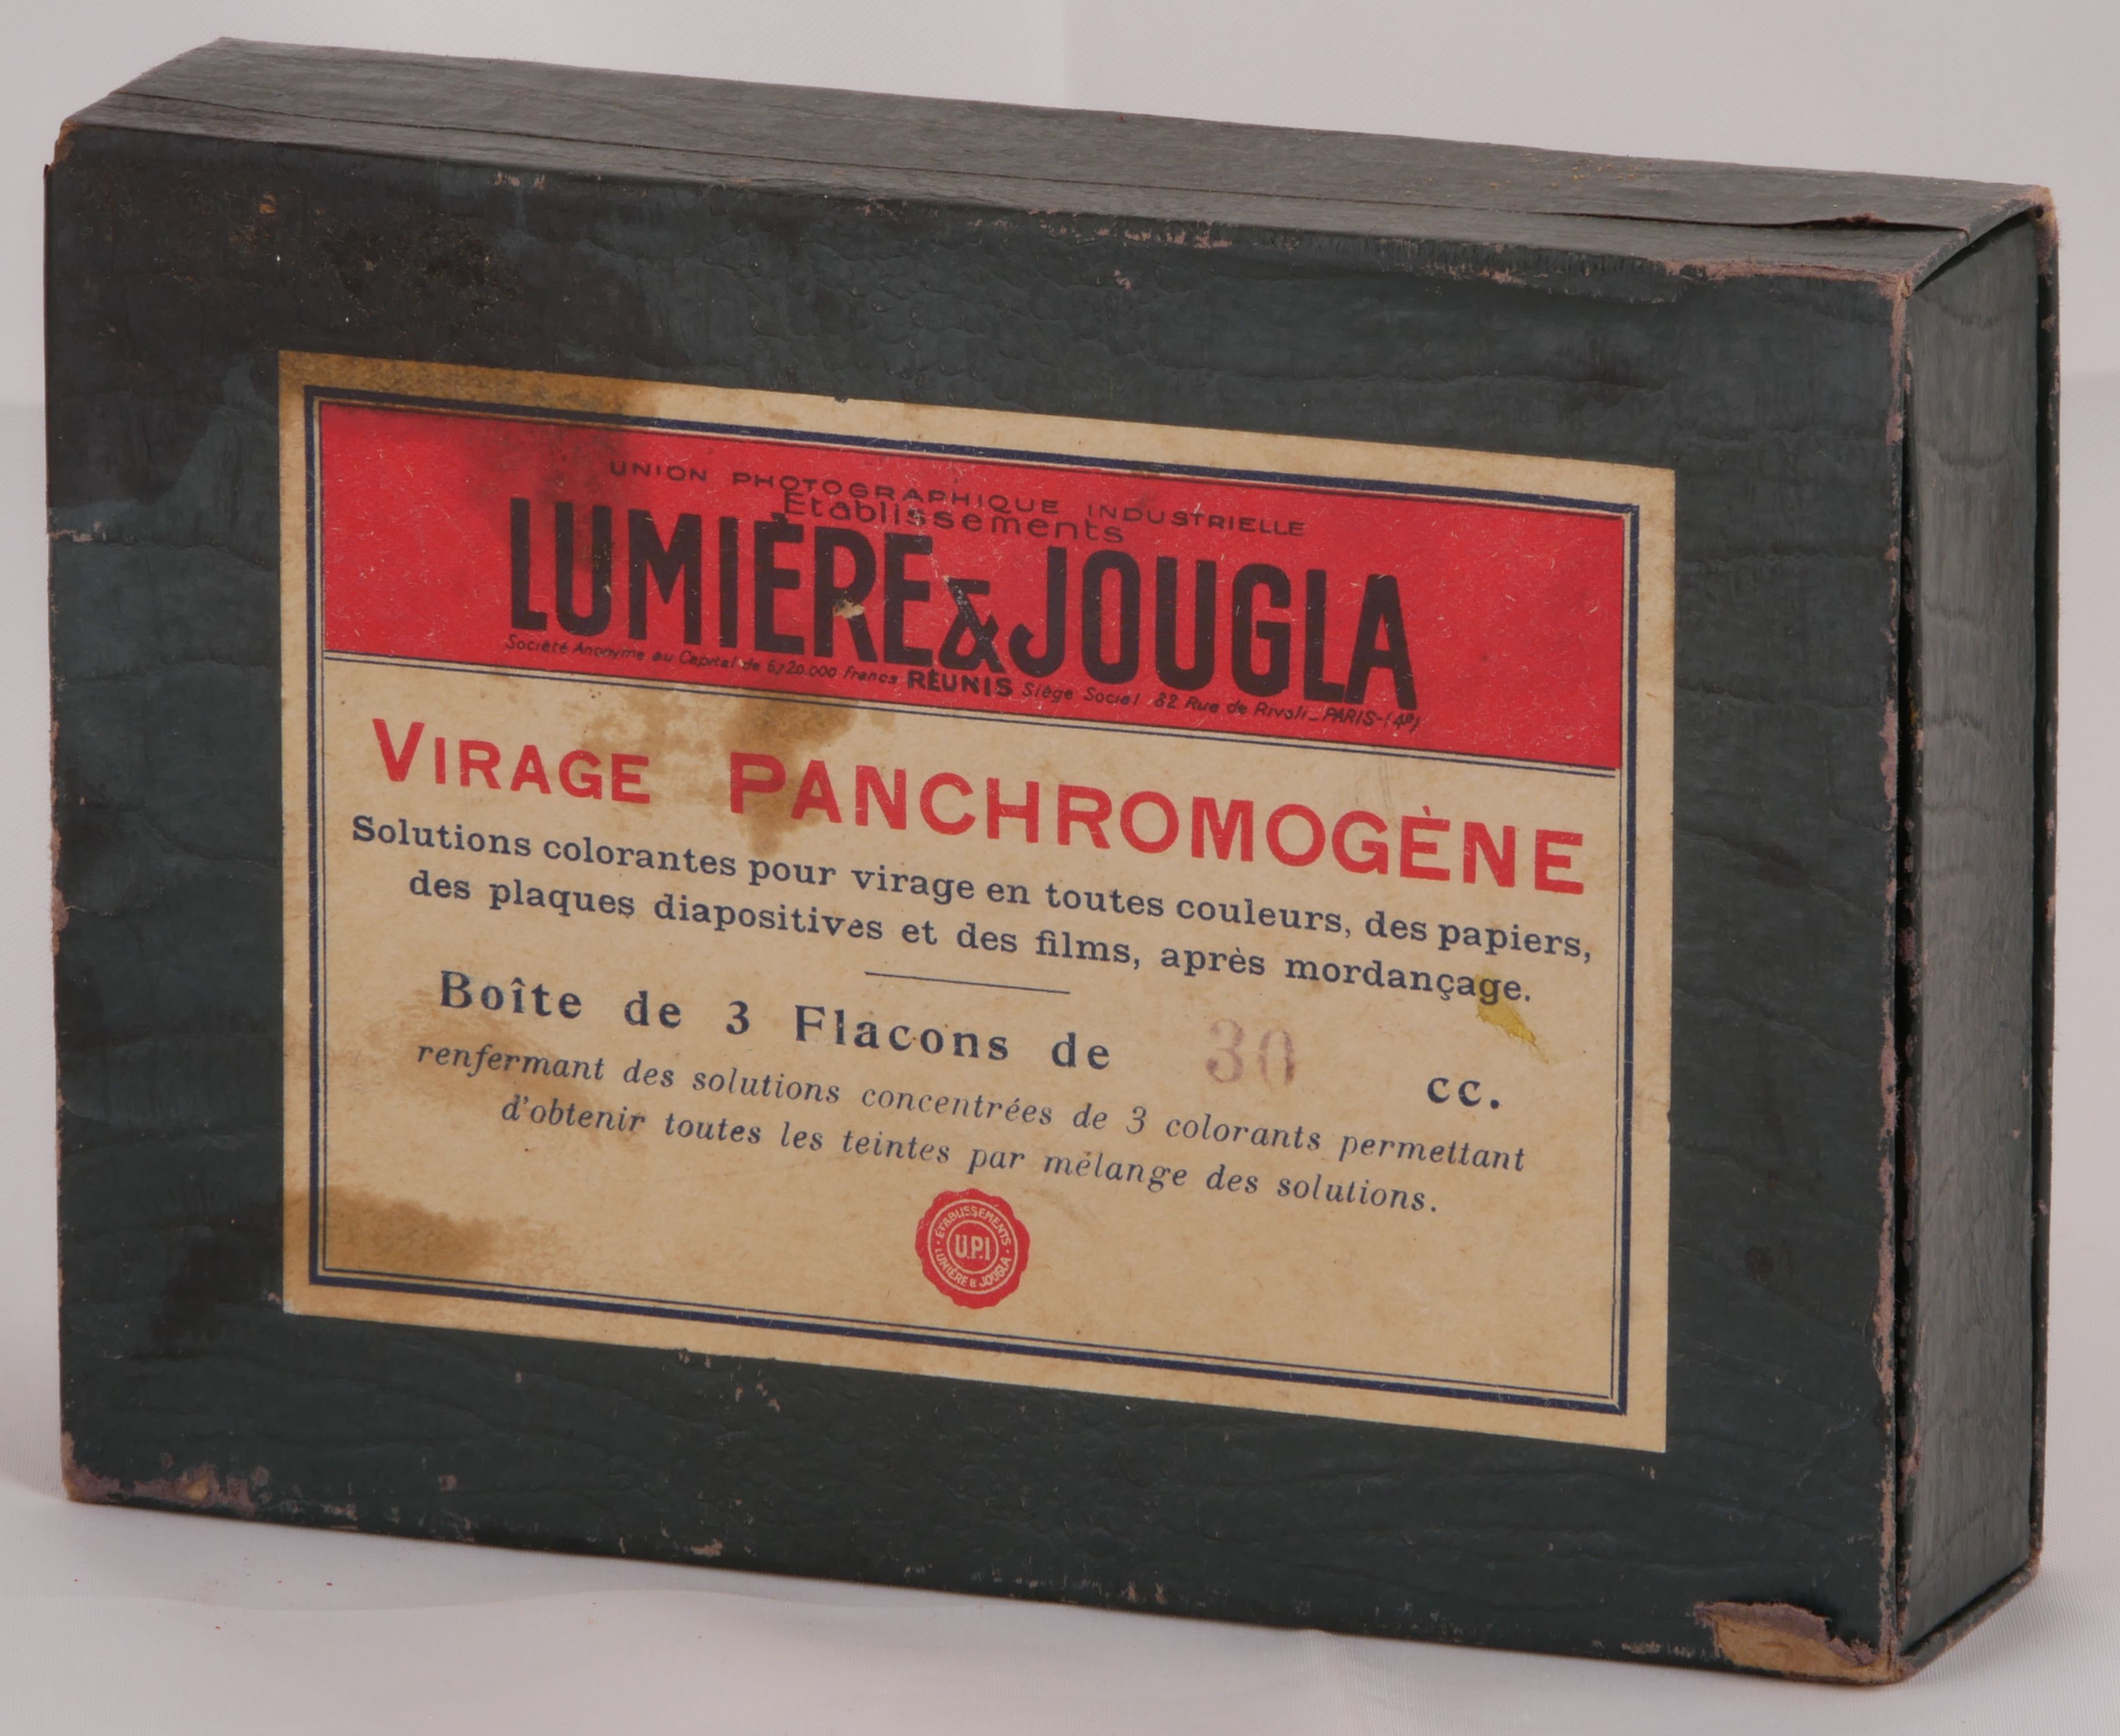 Virage Panchromogène - Boîte de 3 flacons de 30 cc